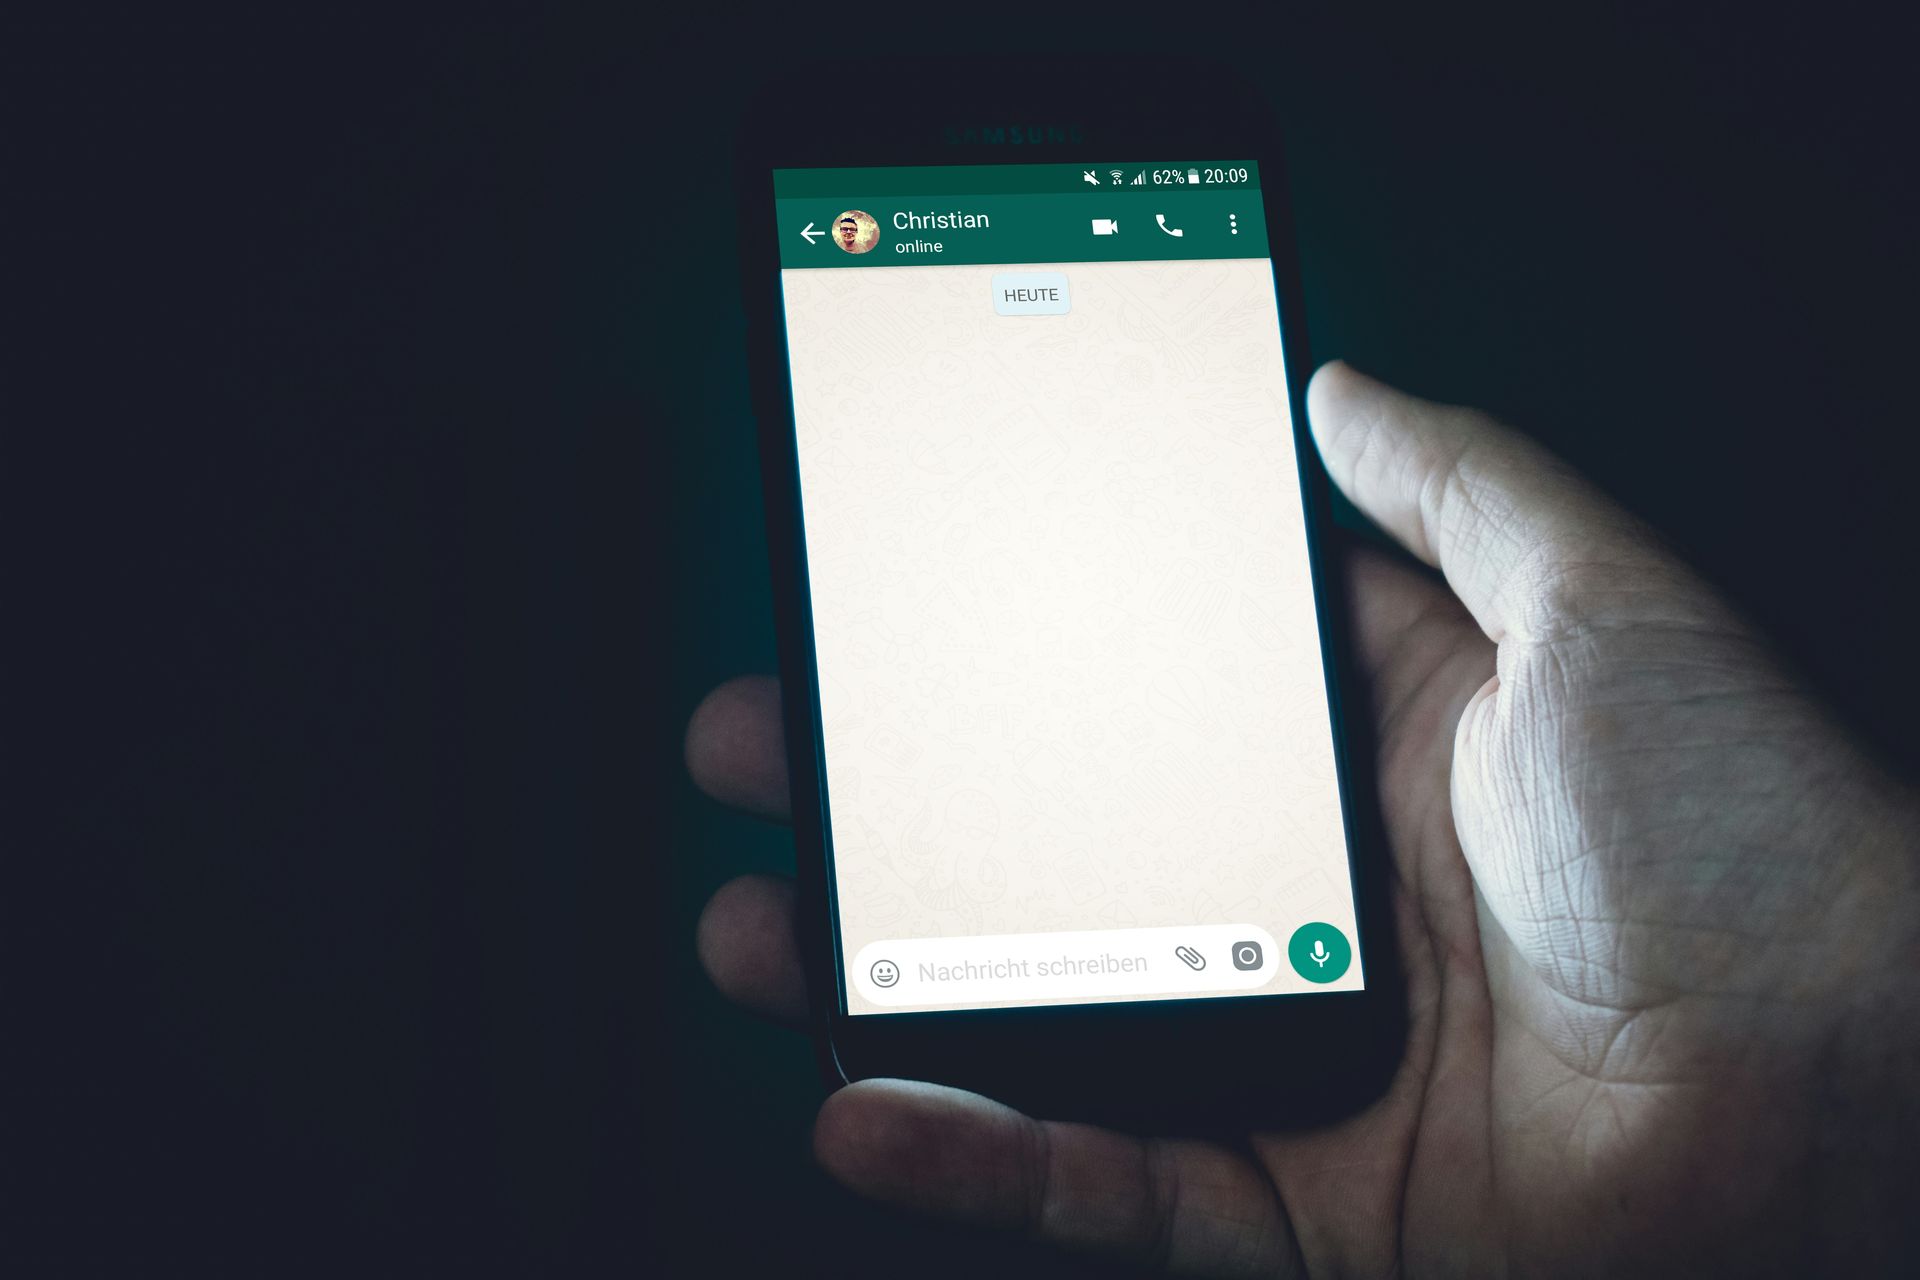 WhatsApp turned green: Why?